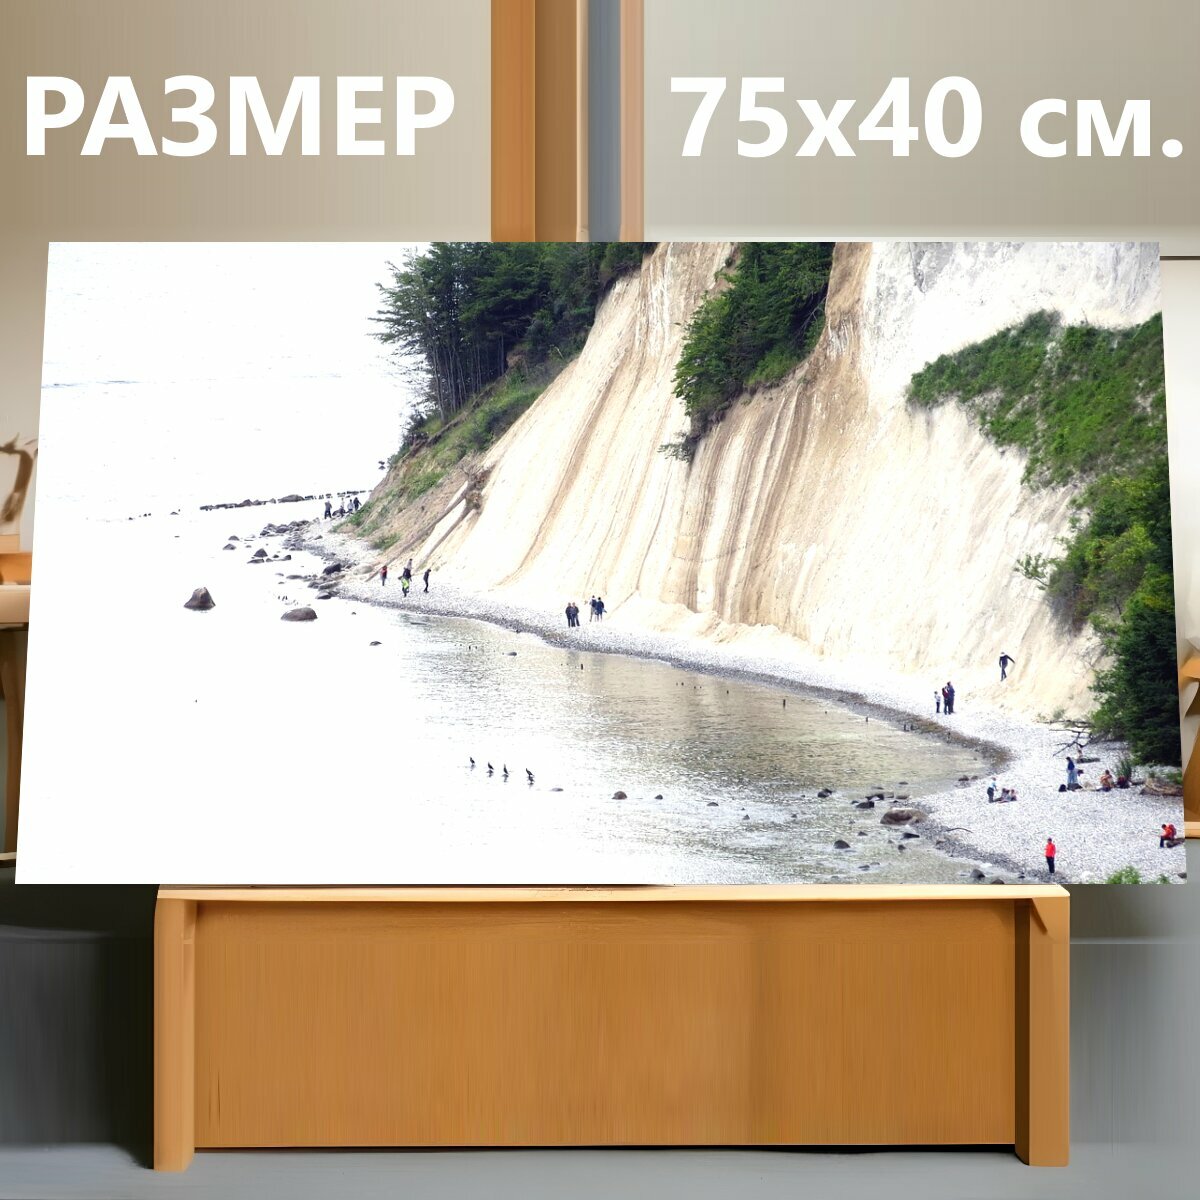 Картина на холсте "Походная тропа на высоком берегу, мировоззрение, белые скалы" на подрамнике 75х40 см. для интерьера